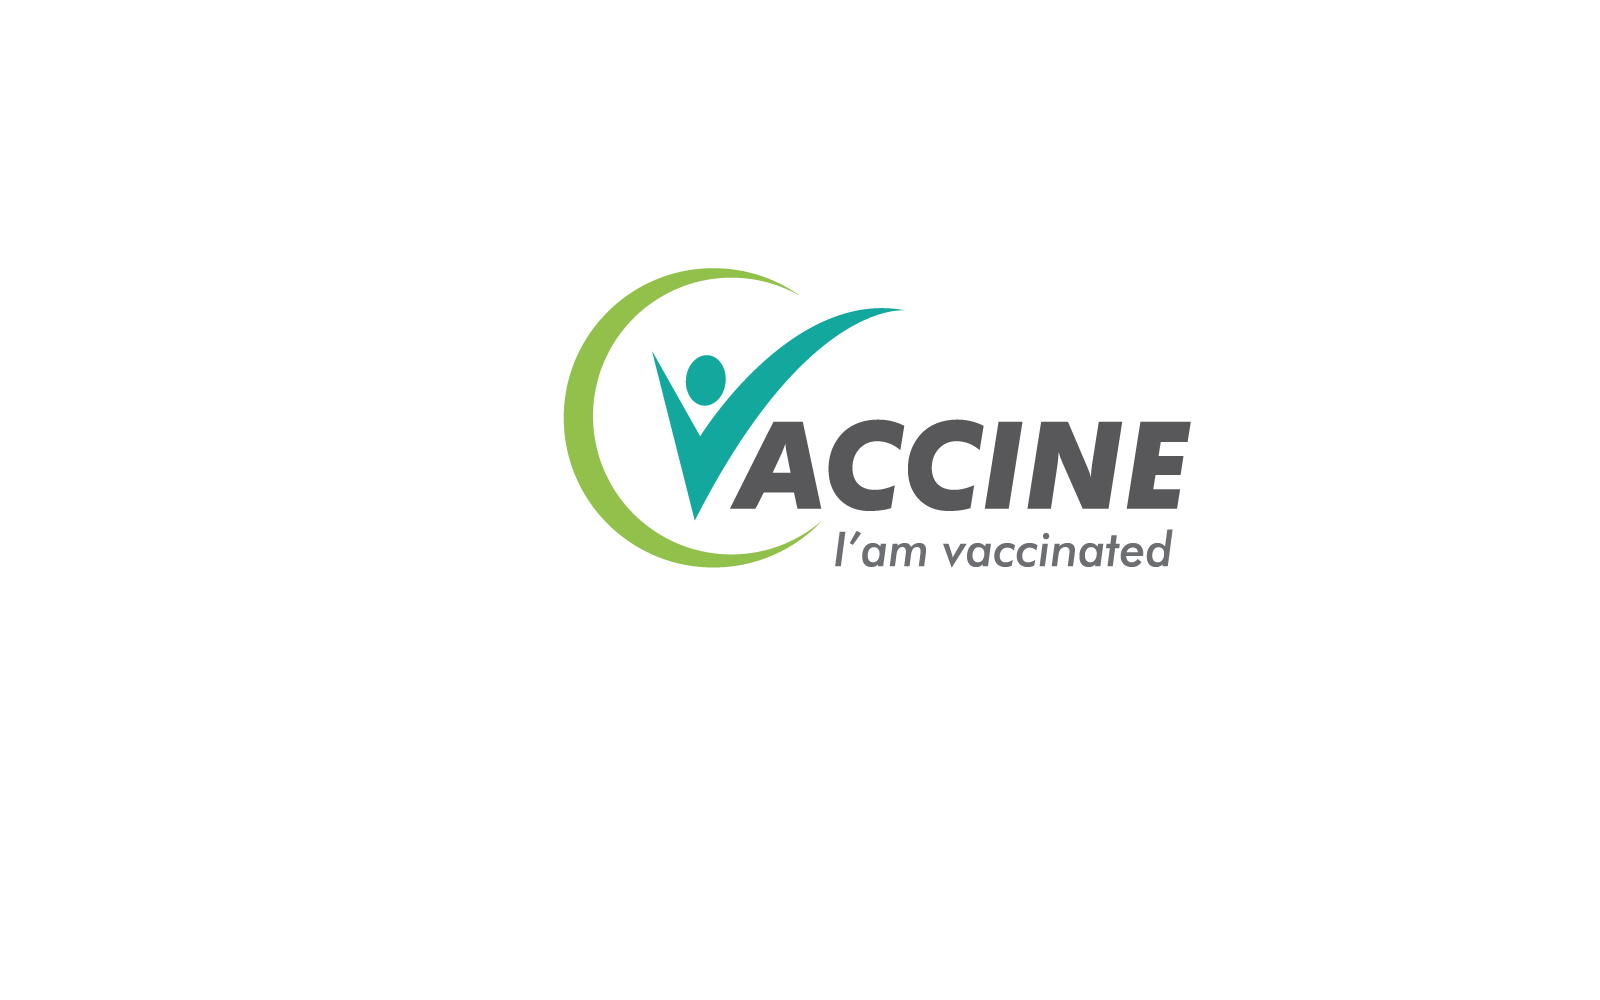 Vaccine covid 19 logo vector illustration template